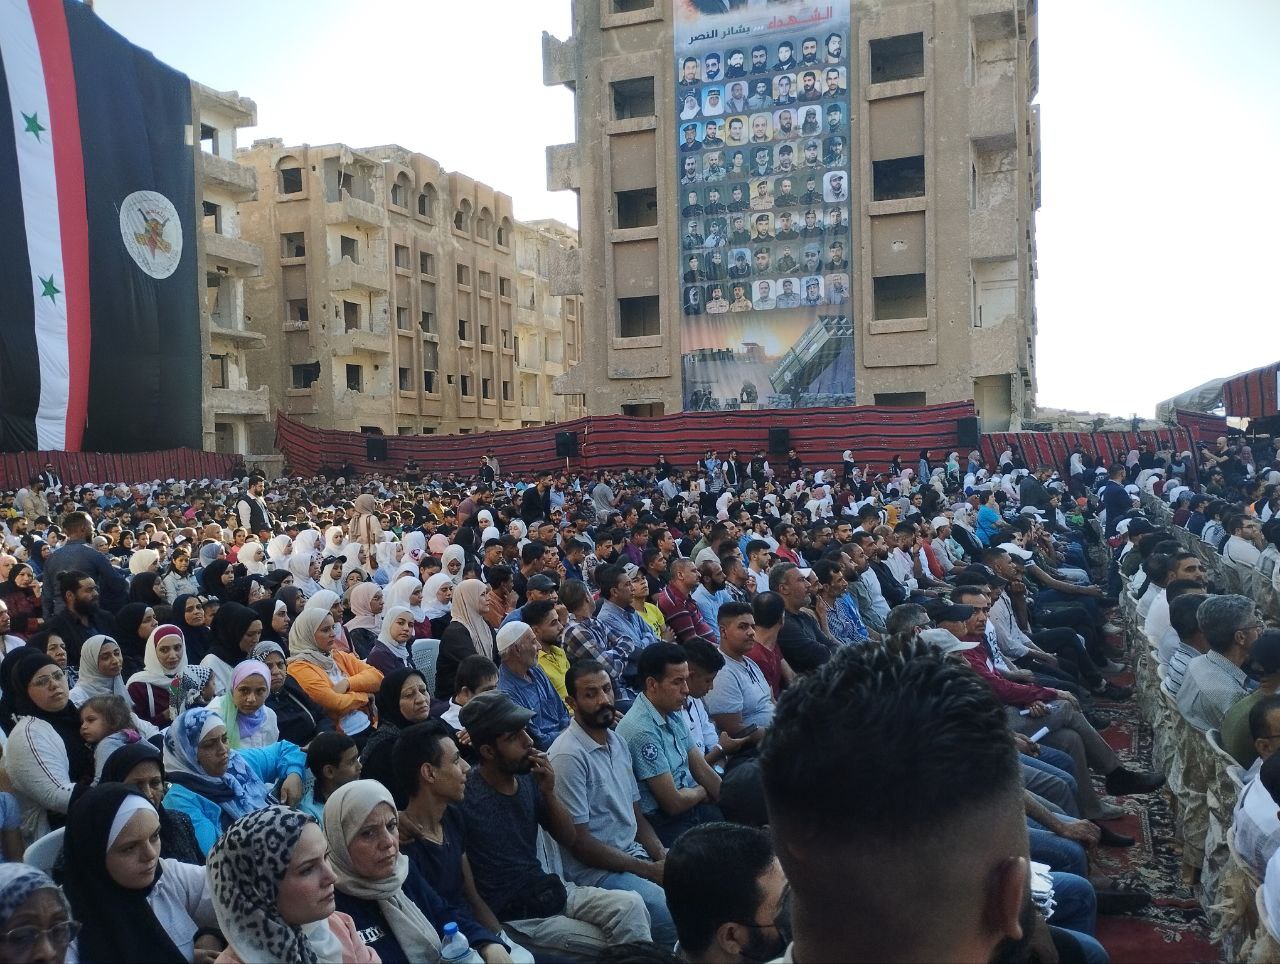 الجهاد الإسلامي تحيي ذكرى انطلاقتها الـ 36 في مخيم اليرموك بريف دمشق (1)